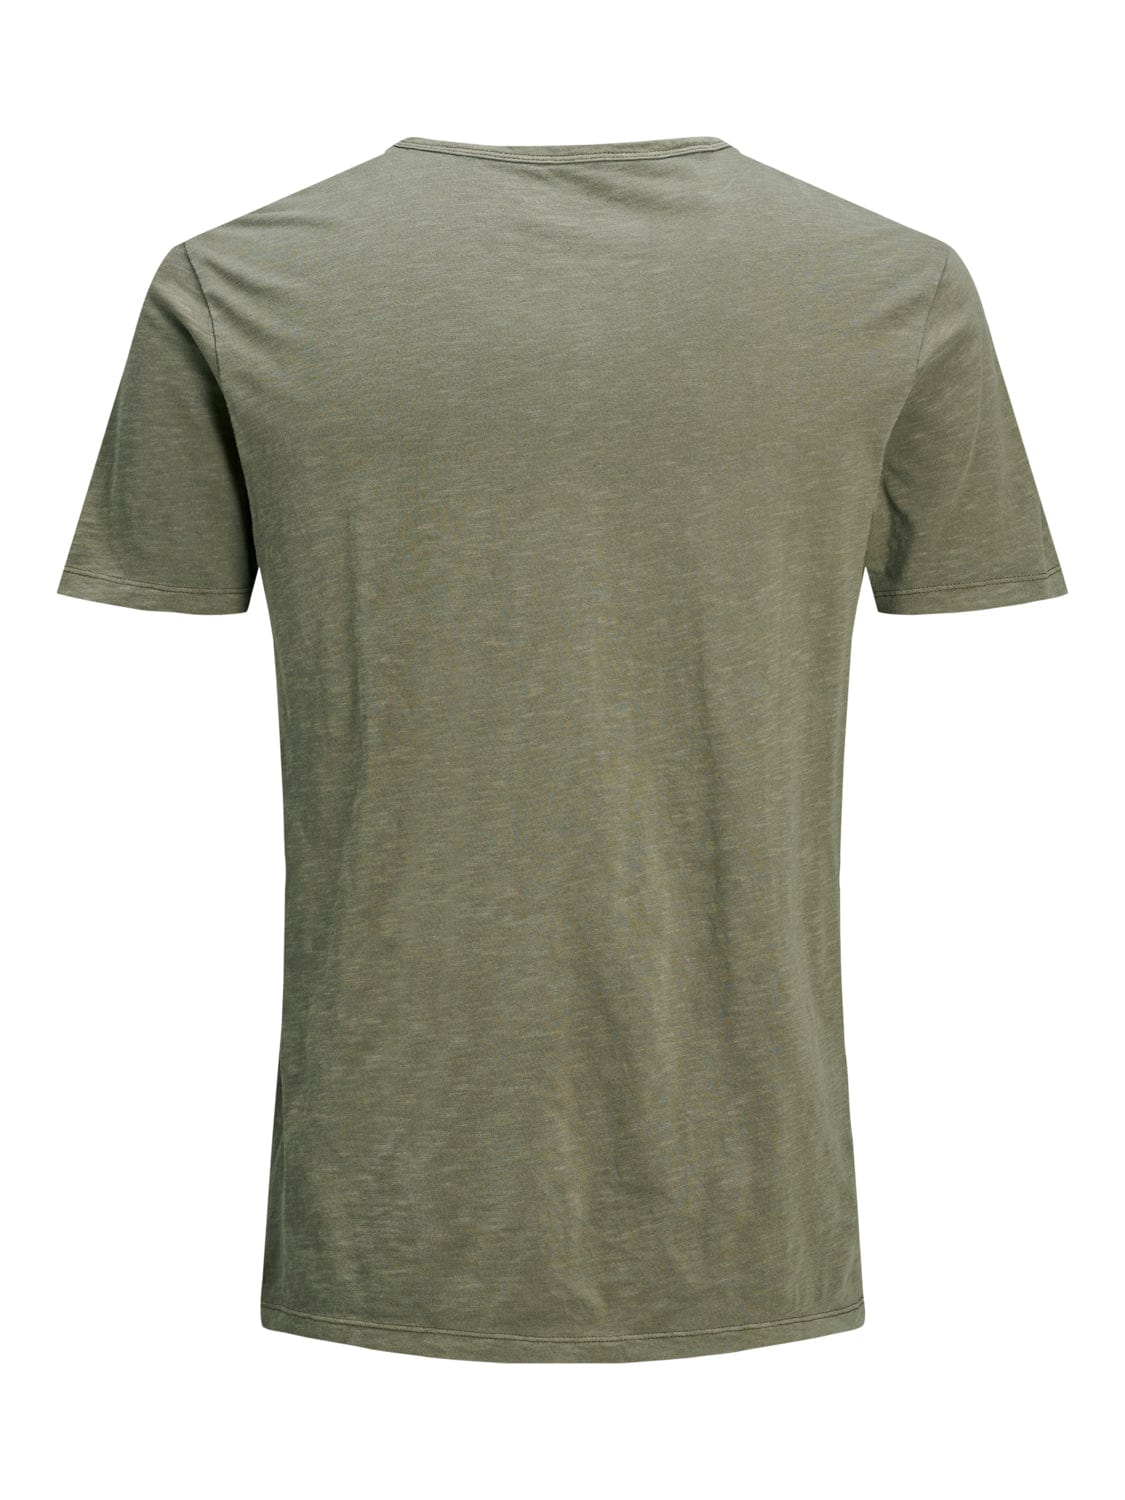 Camiseta cuello pico Verde oliva - SPLIT